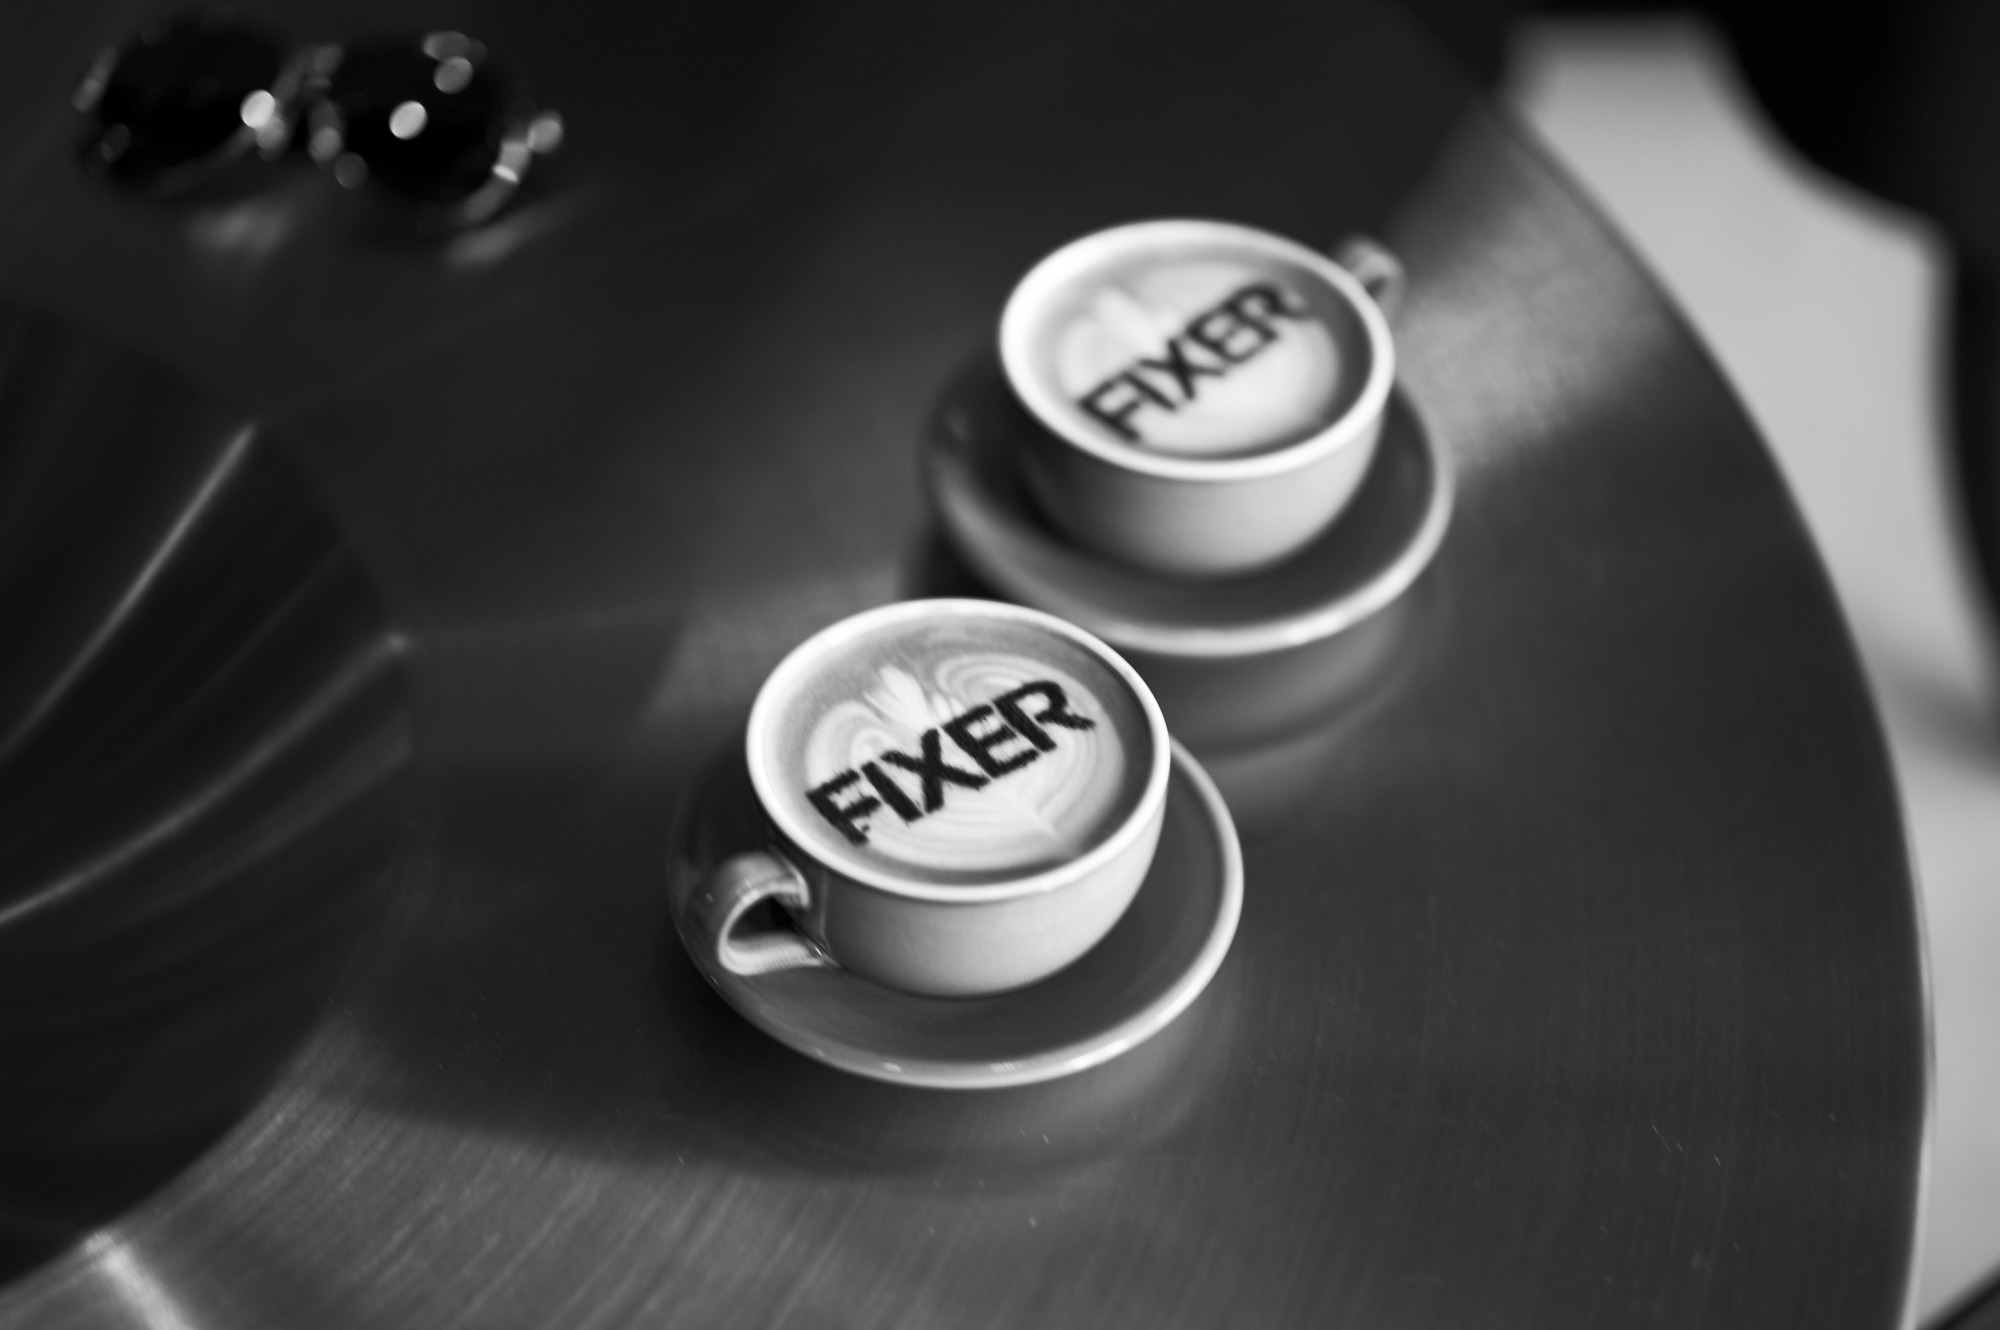 FIXER COFFEE ESPRESSO BLEND-01 フィクサーコーヒー エスプレッソブレンド 愛知 名古屋 Alto e Diritto altoediritto アルトエデリット コーヒー  FIXER 01 espresso blend（中深煎り) wine、nuts、chocolate 世界各地より厳選された4つの産地、精製違いを数えると5種類の上質な珈琲豆を使用し、複雑に調合。 カフェラテに適した、飲みやすい中深煎りのエスプレッソブレンドです。温度により変化するワインのような華やかな香り、チョコレートのような甘み、そしてナッツのようなコクを感じていただけます。明るく華やかな香り高い印象を与えるコロンビアは、ナチュラル精製による甘味の凝縮と、アナエロビック製法による類を見ない香りをオフェンシブに。守りの土台にはグアテマラ。ボディ感を焙煎で表現し、軽いコーヒーにならないようブレンドの長所を引き立たせる重要な役割をに担う。コーヒーの味わいがしっかりと出るブラジルが、複雑な味わいの緩衝材となる中盤のポジションをとり、同様に酸味の調和をホンジュラスがさりげなく馴染ませることでまとめ上げた、超絶スペシャルなコーヒー豆。